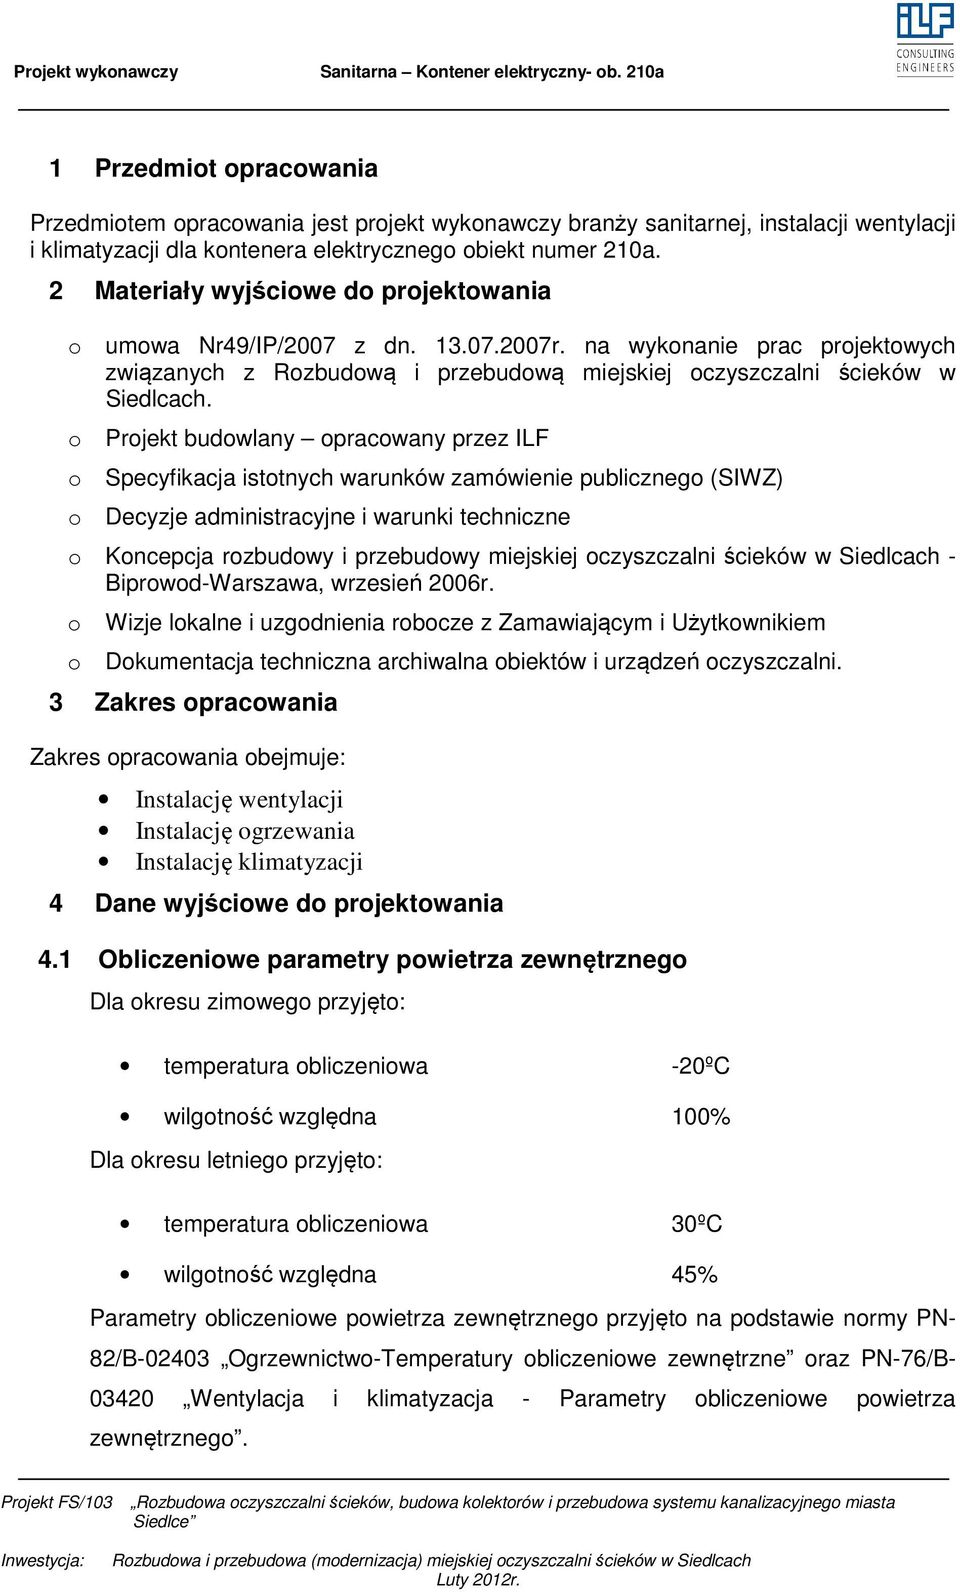 2 Materiały wyjściwe d prjektwania umwa Nr49/IP/2007 z dn. 13.07.2007r. na wyknanie prac prjektwych związanych z Rzbudwą i przebudwą miejskiej czyszczalni ścieków w Siedlcach.